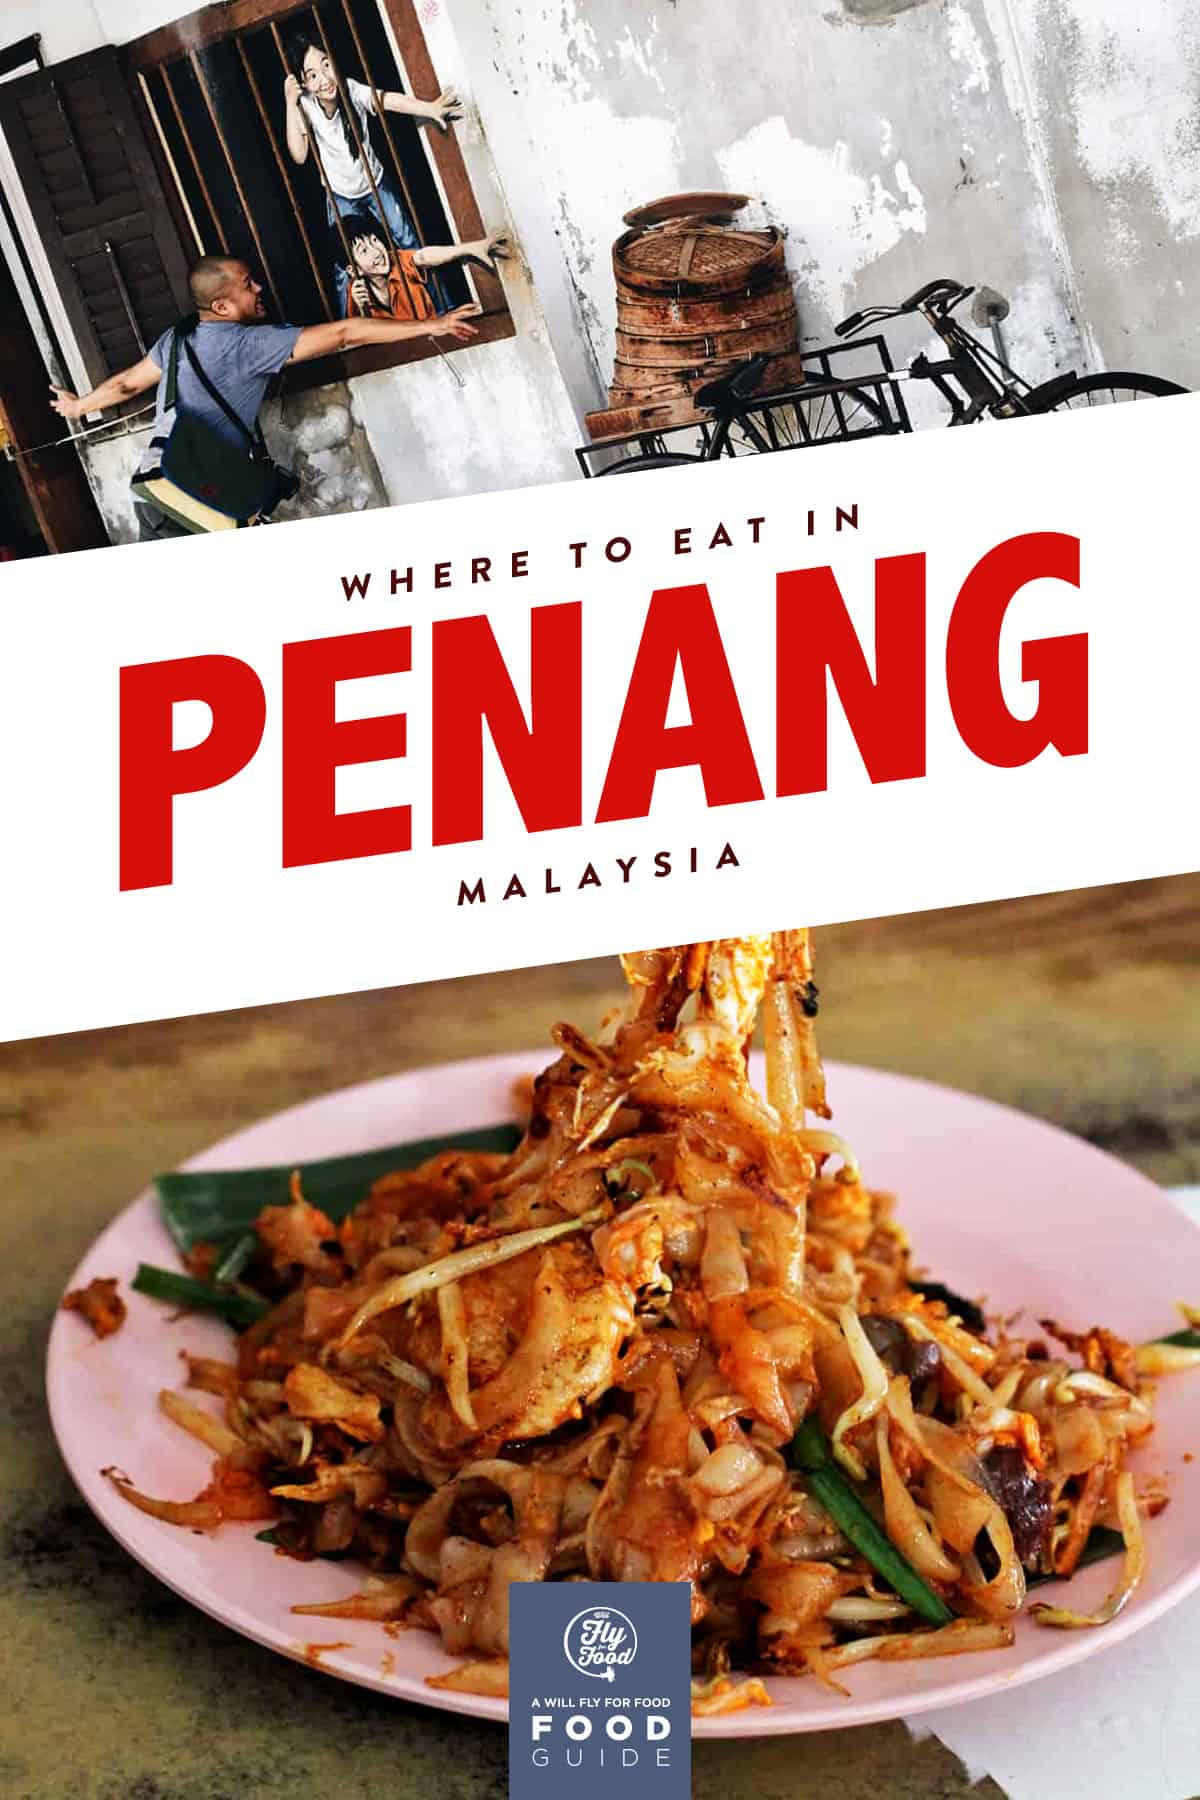 Foodie penang Penang is